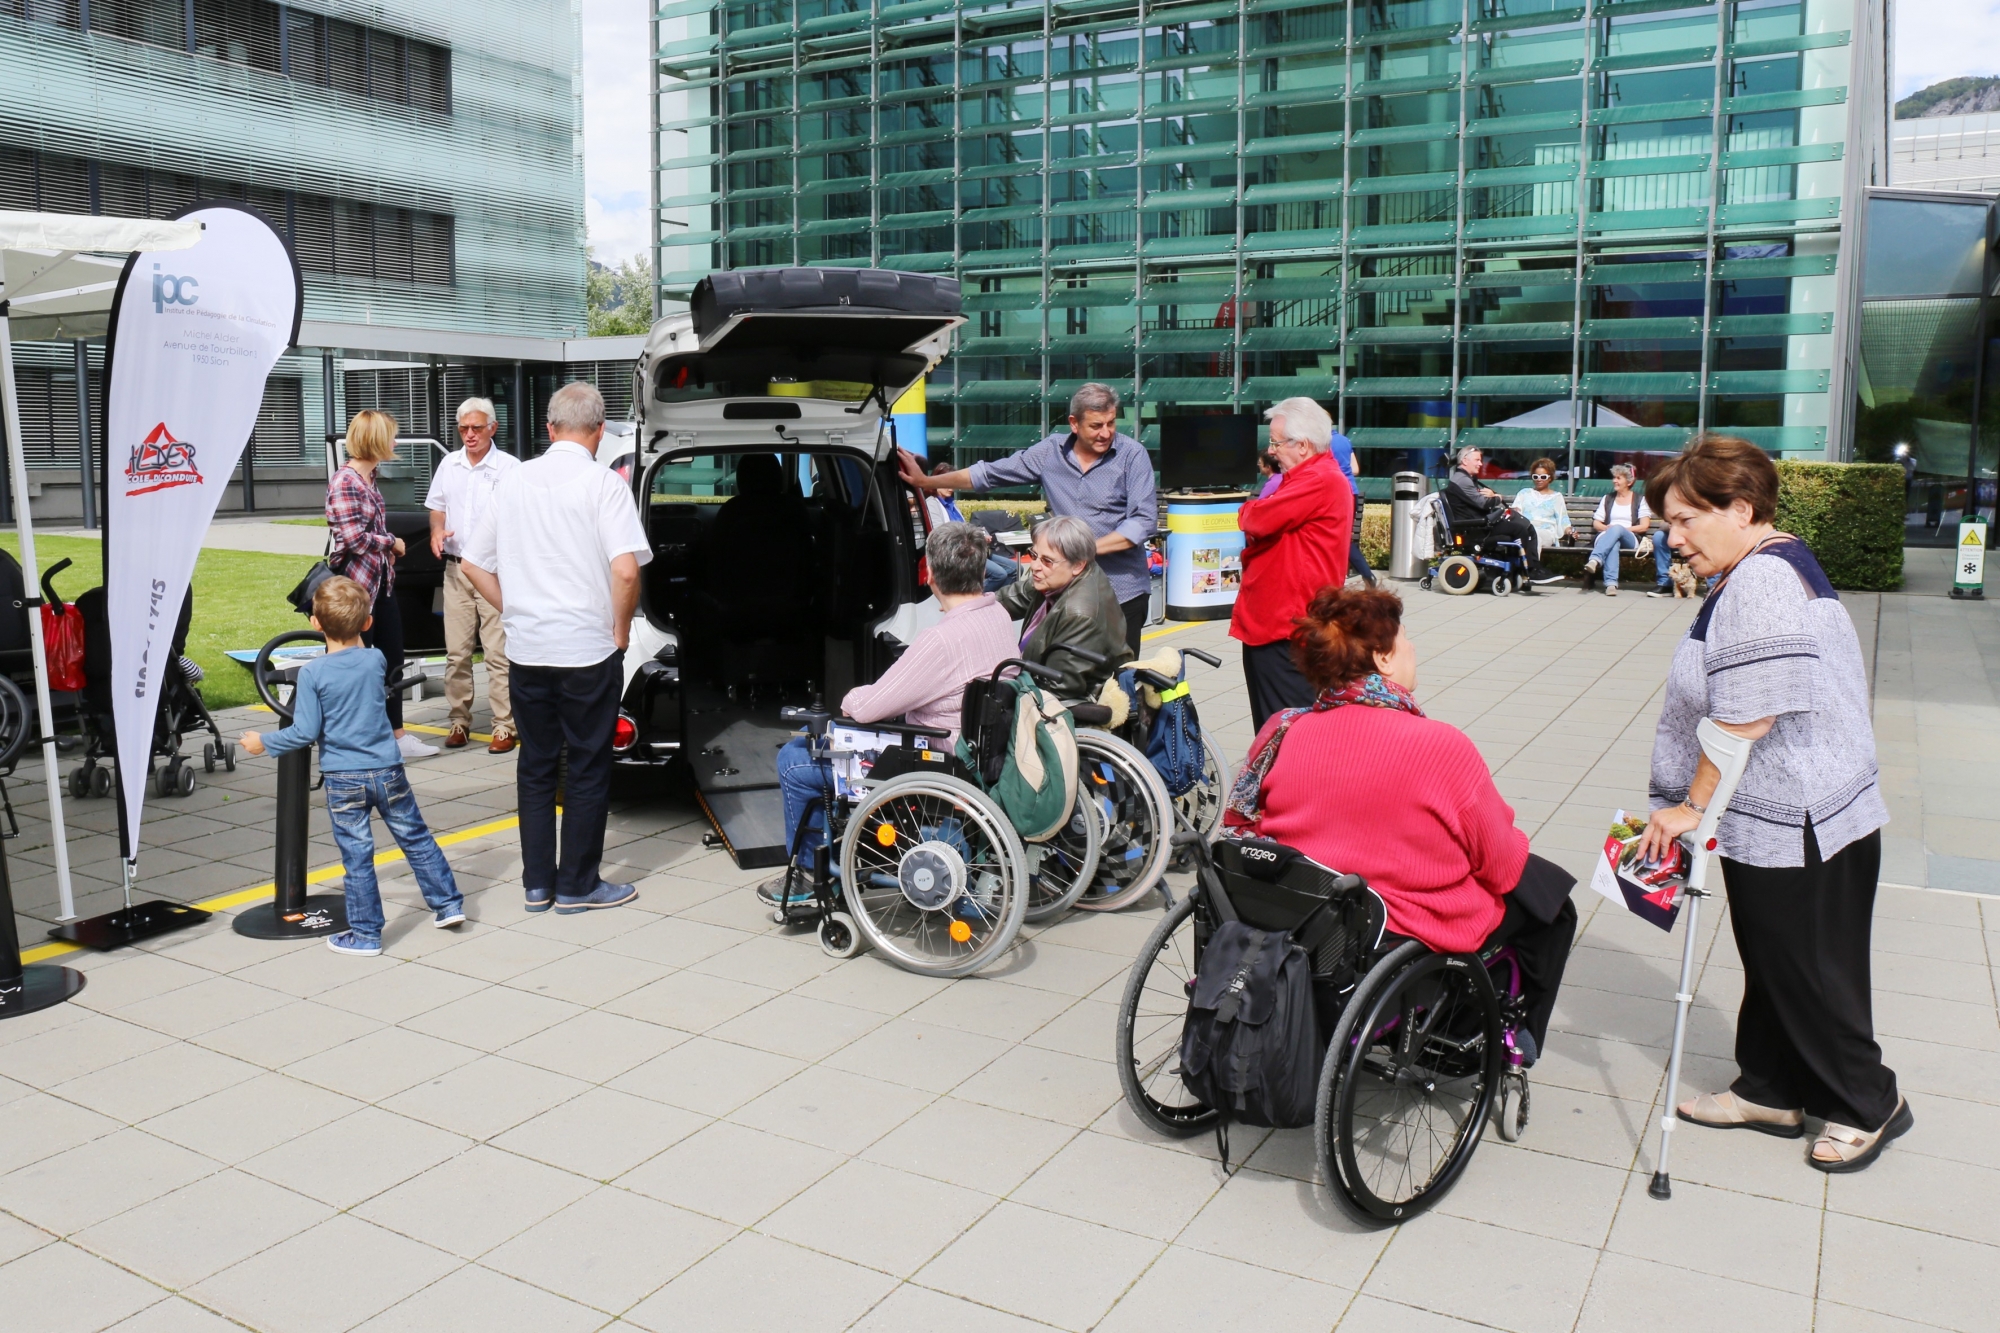 Lors du Pararomandie 2019, le public pourra également découvrir les moyens auxiliaires des personnes paraplégiques. Parmi eux, les aménagements existants pour la conduite d'un véhicule.